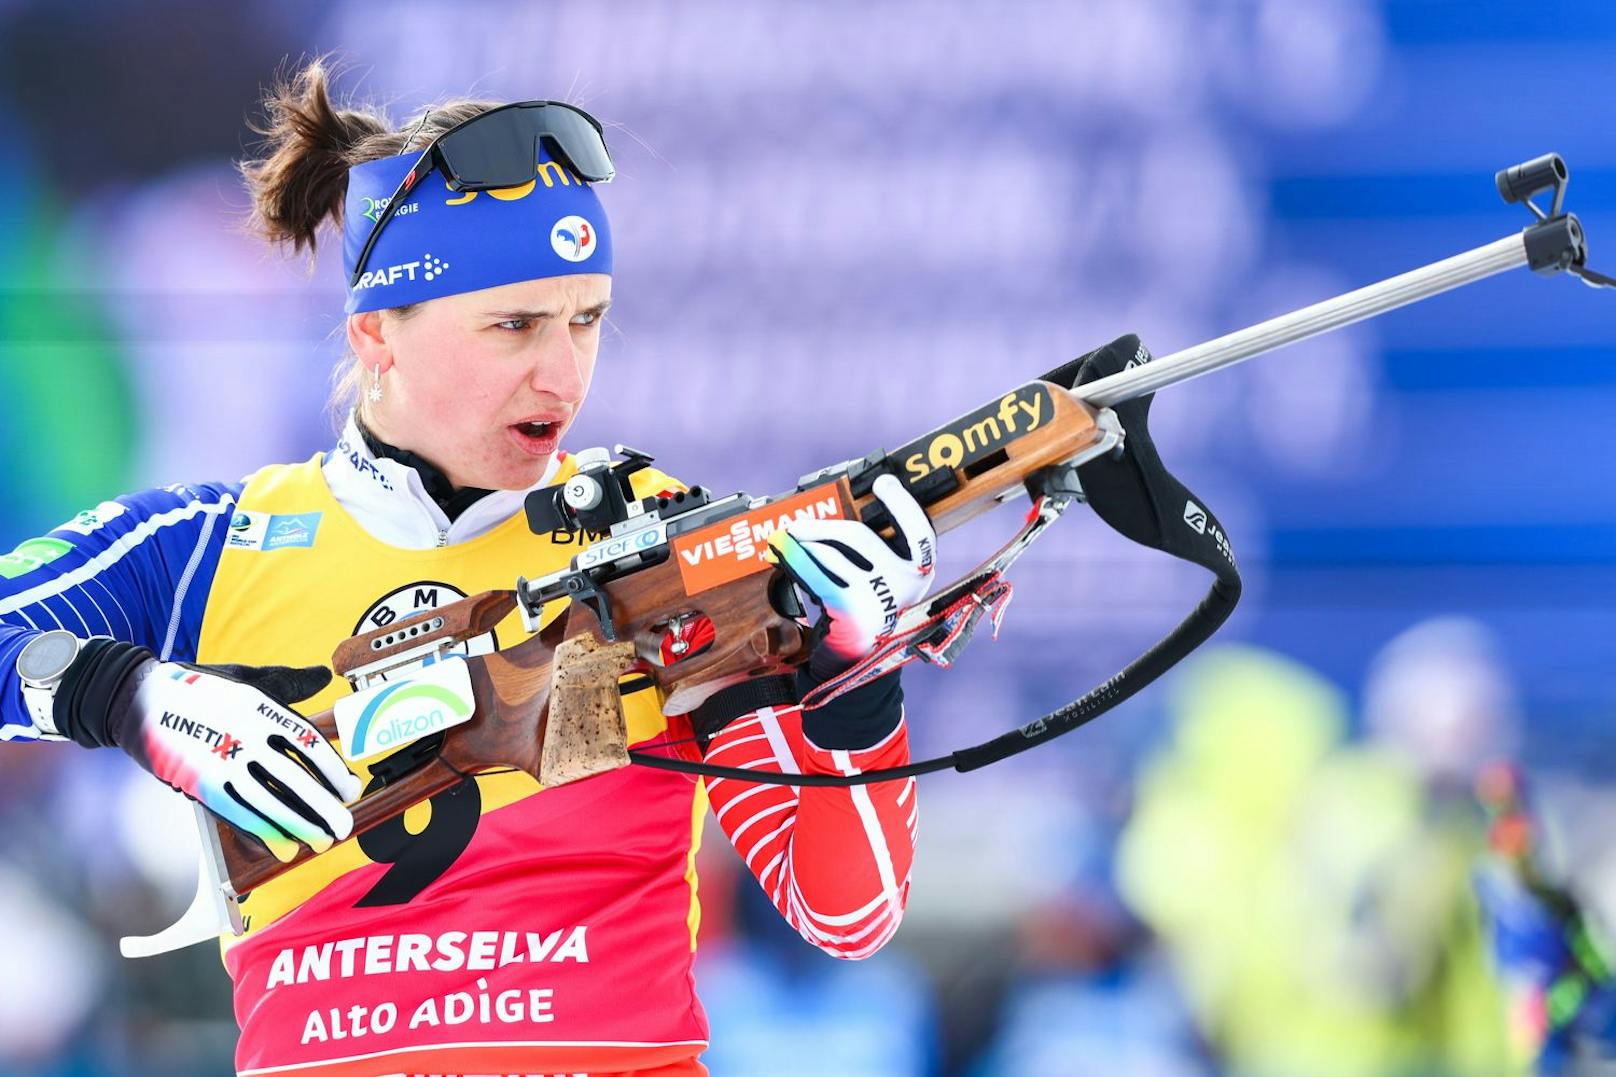 Anzeige – Teamkollegin wirft Biathlon-Star Betrug vor